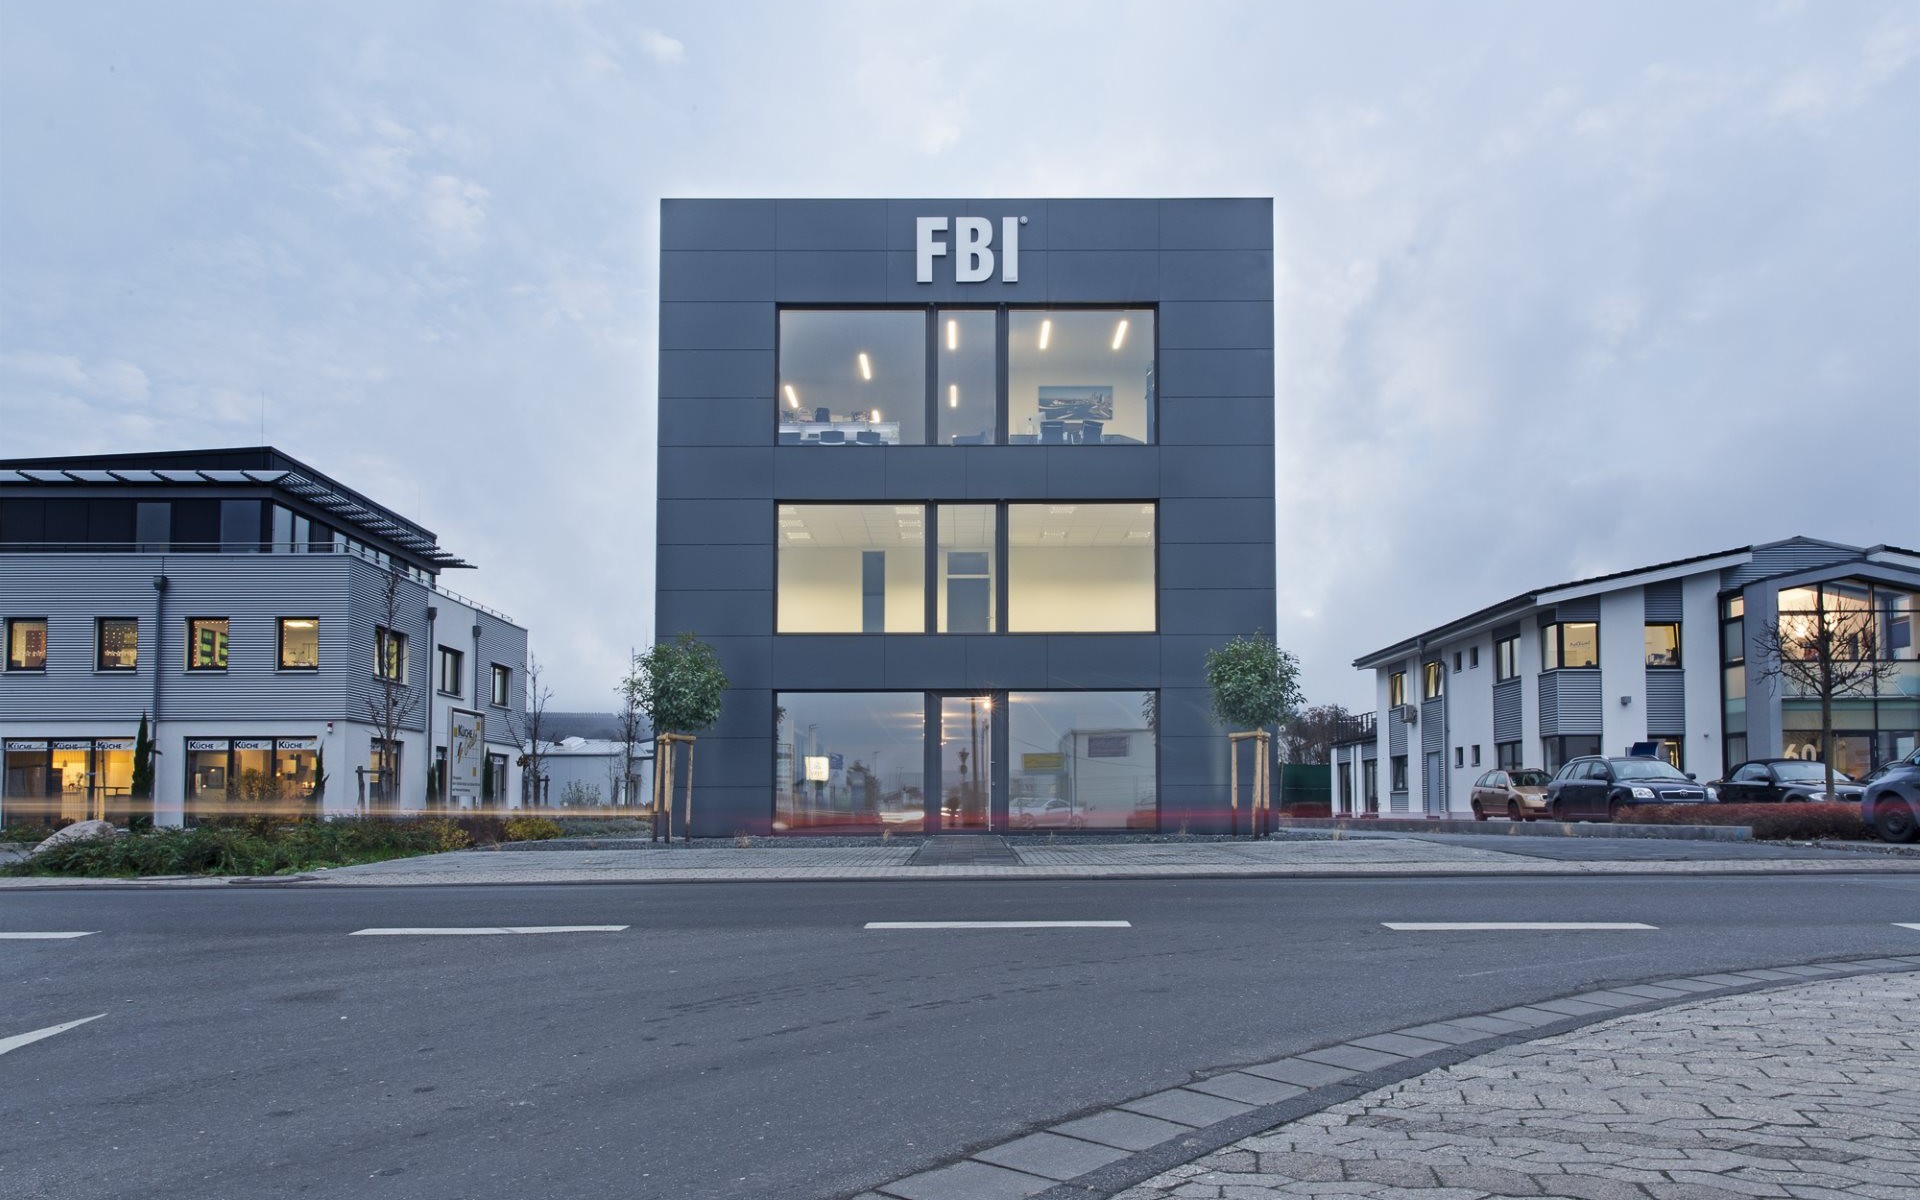 FBI Gebäude frontal 2000pxa